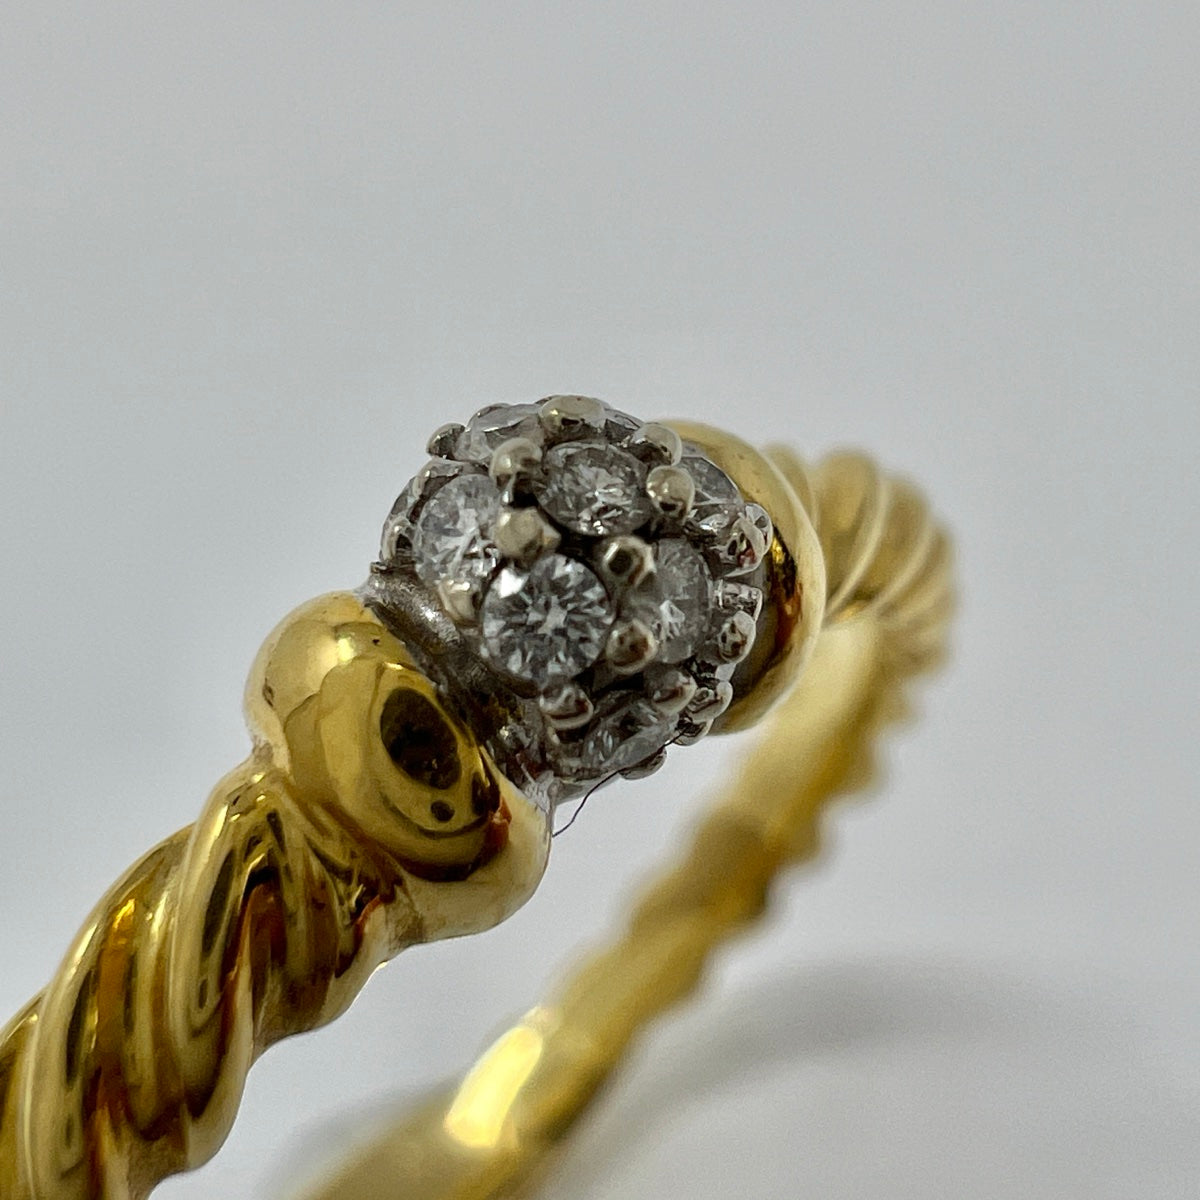 David Yurman Solari Station 18K Gold Ring with Diamonds